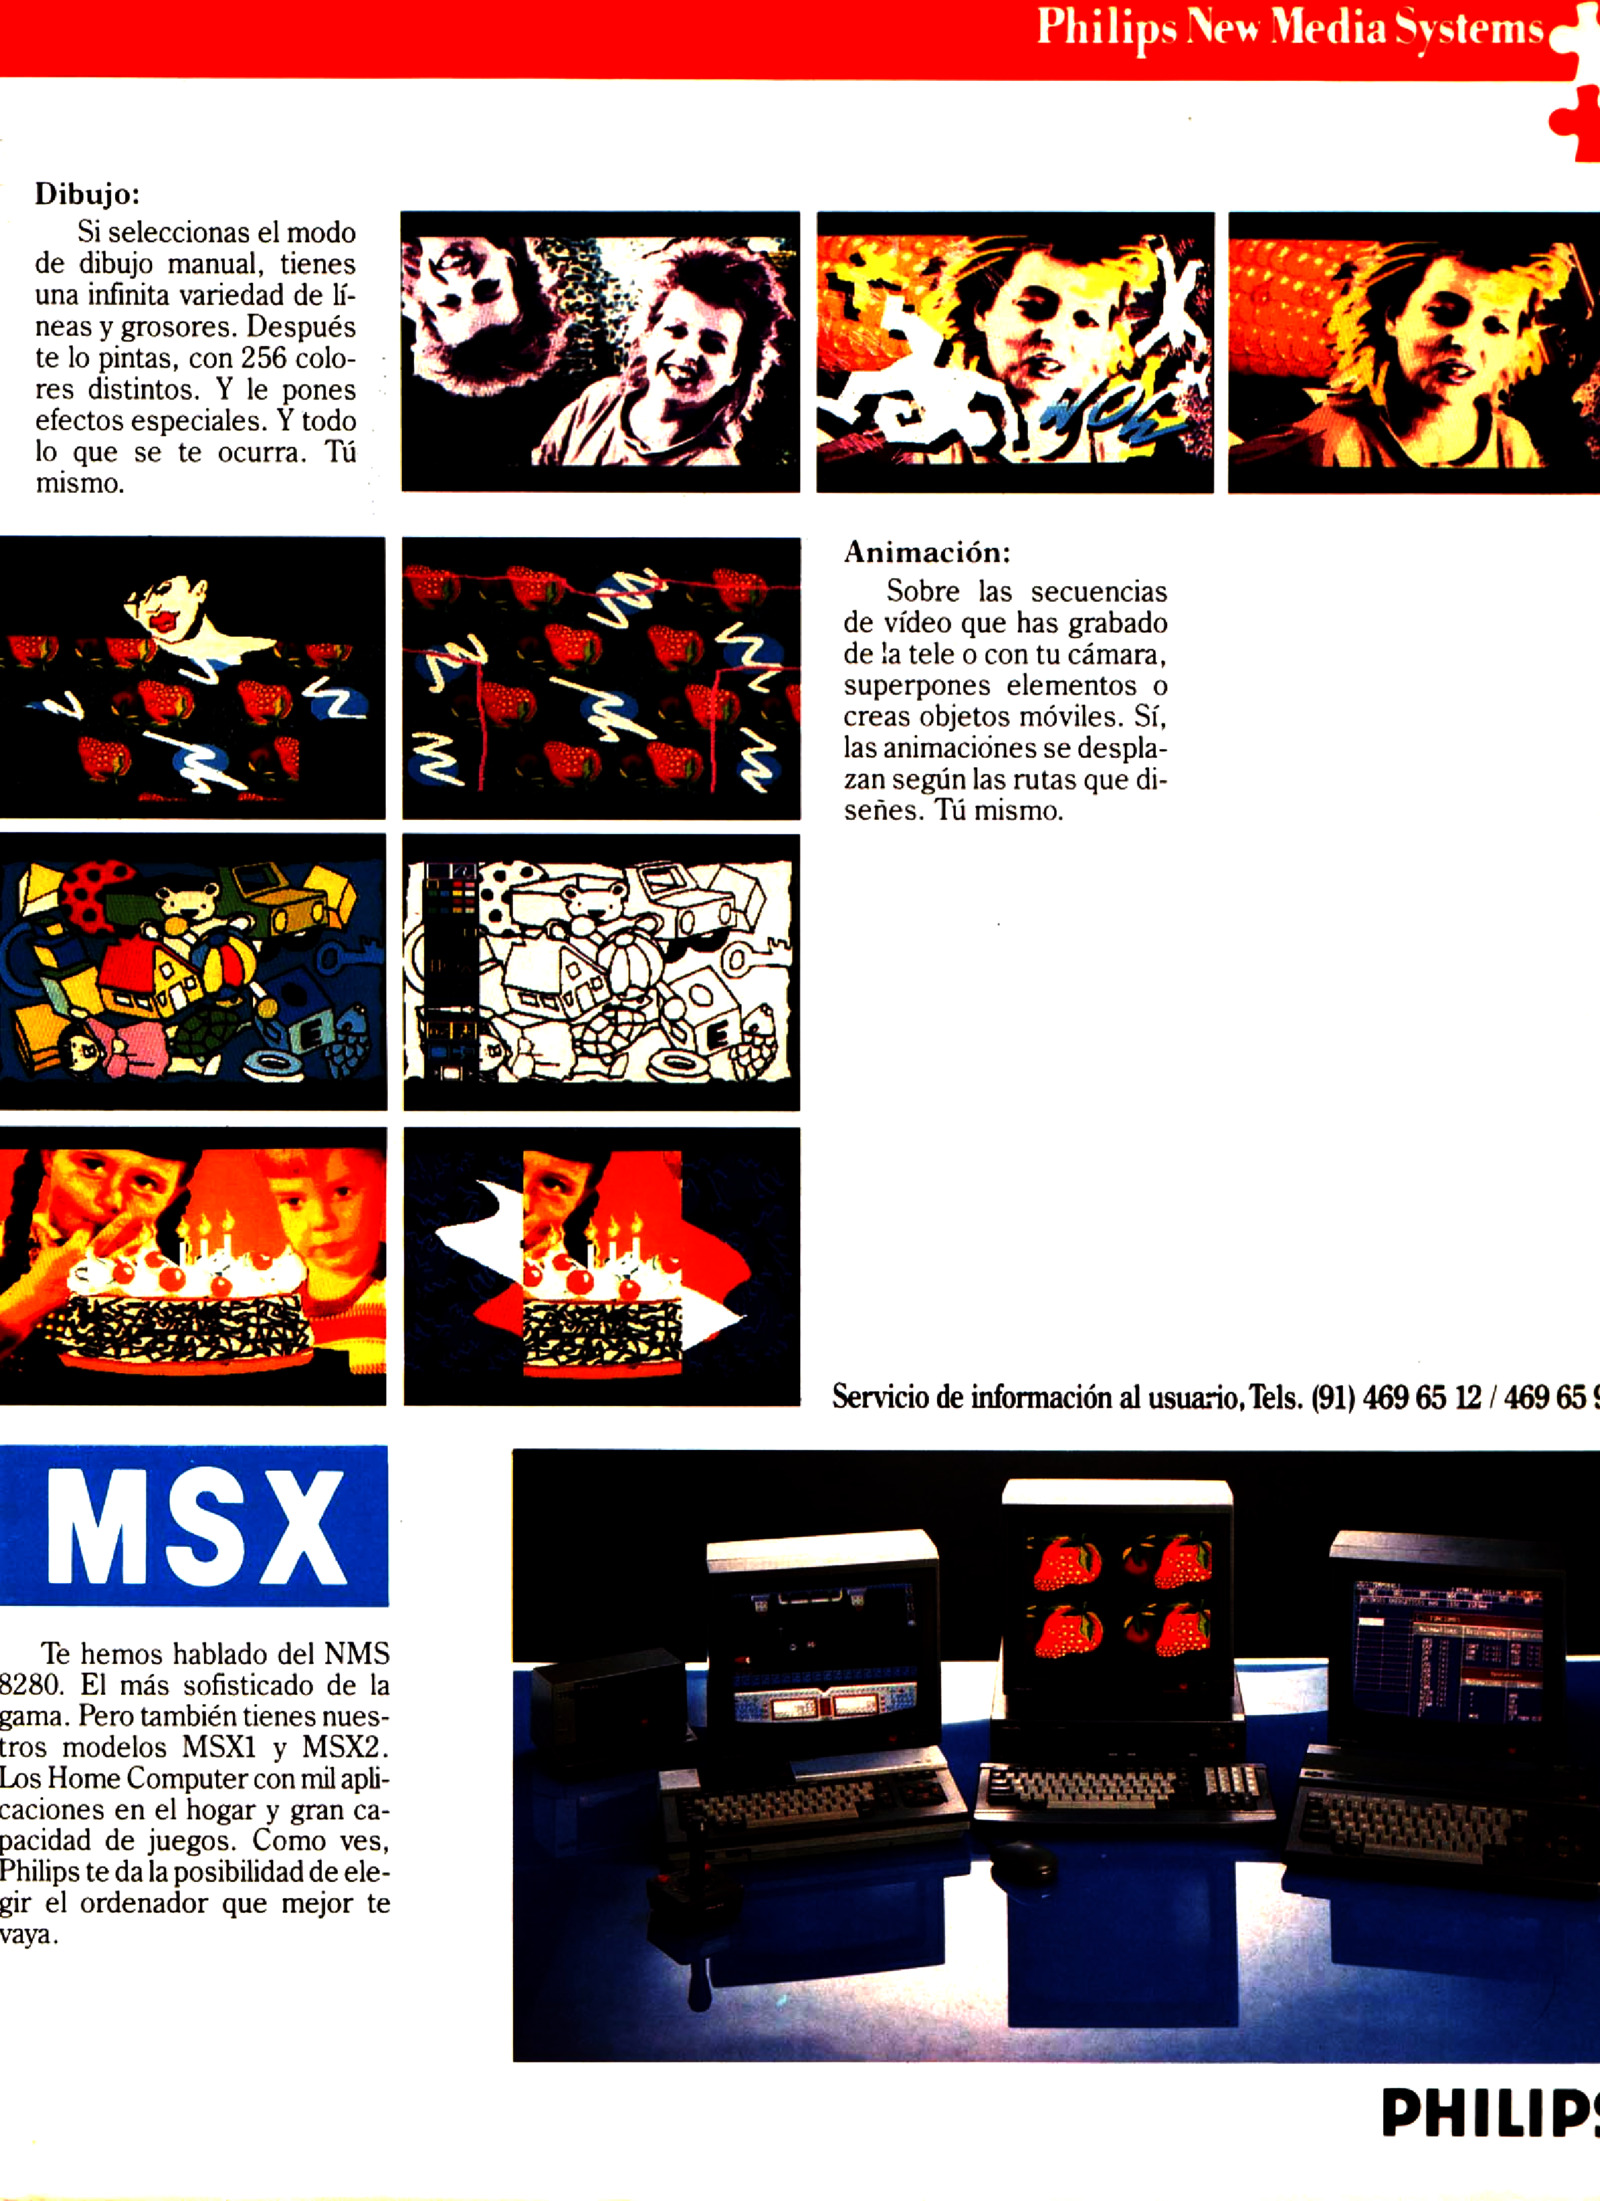 msx-extra 3